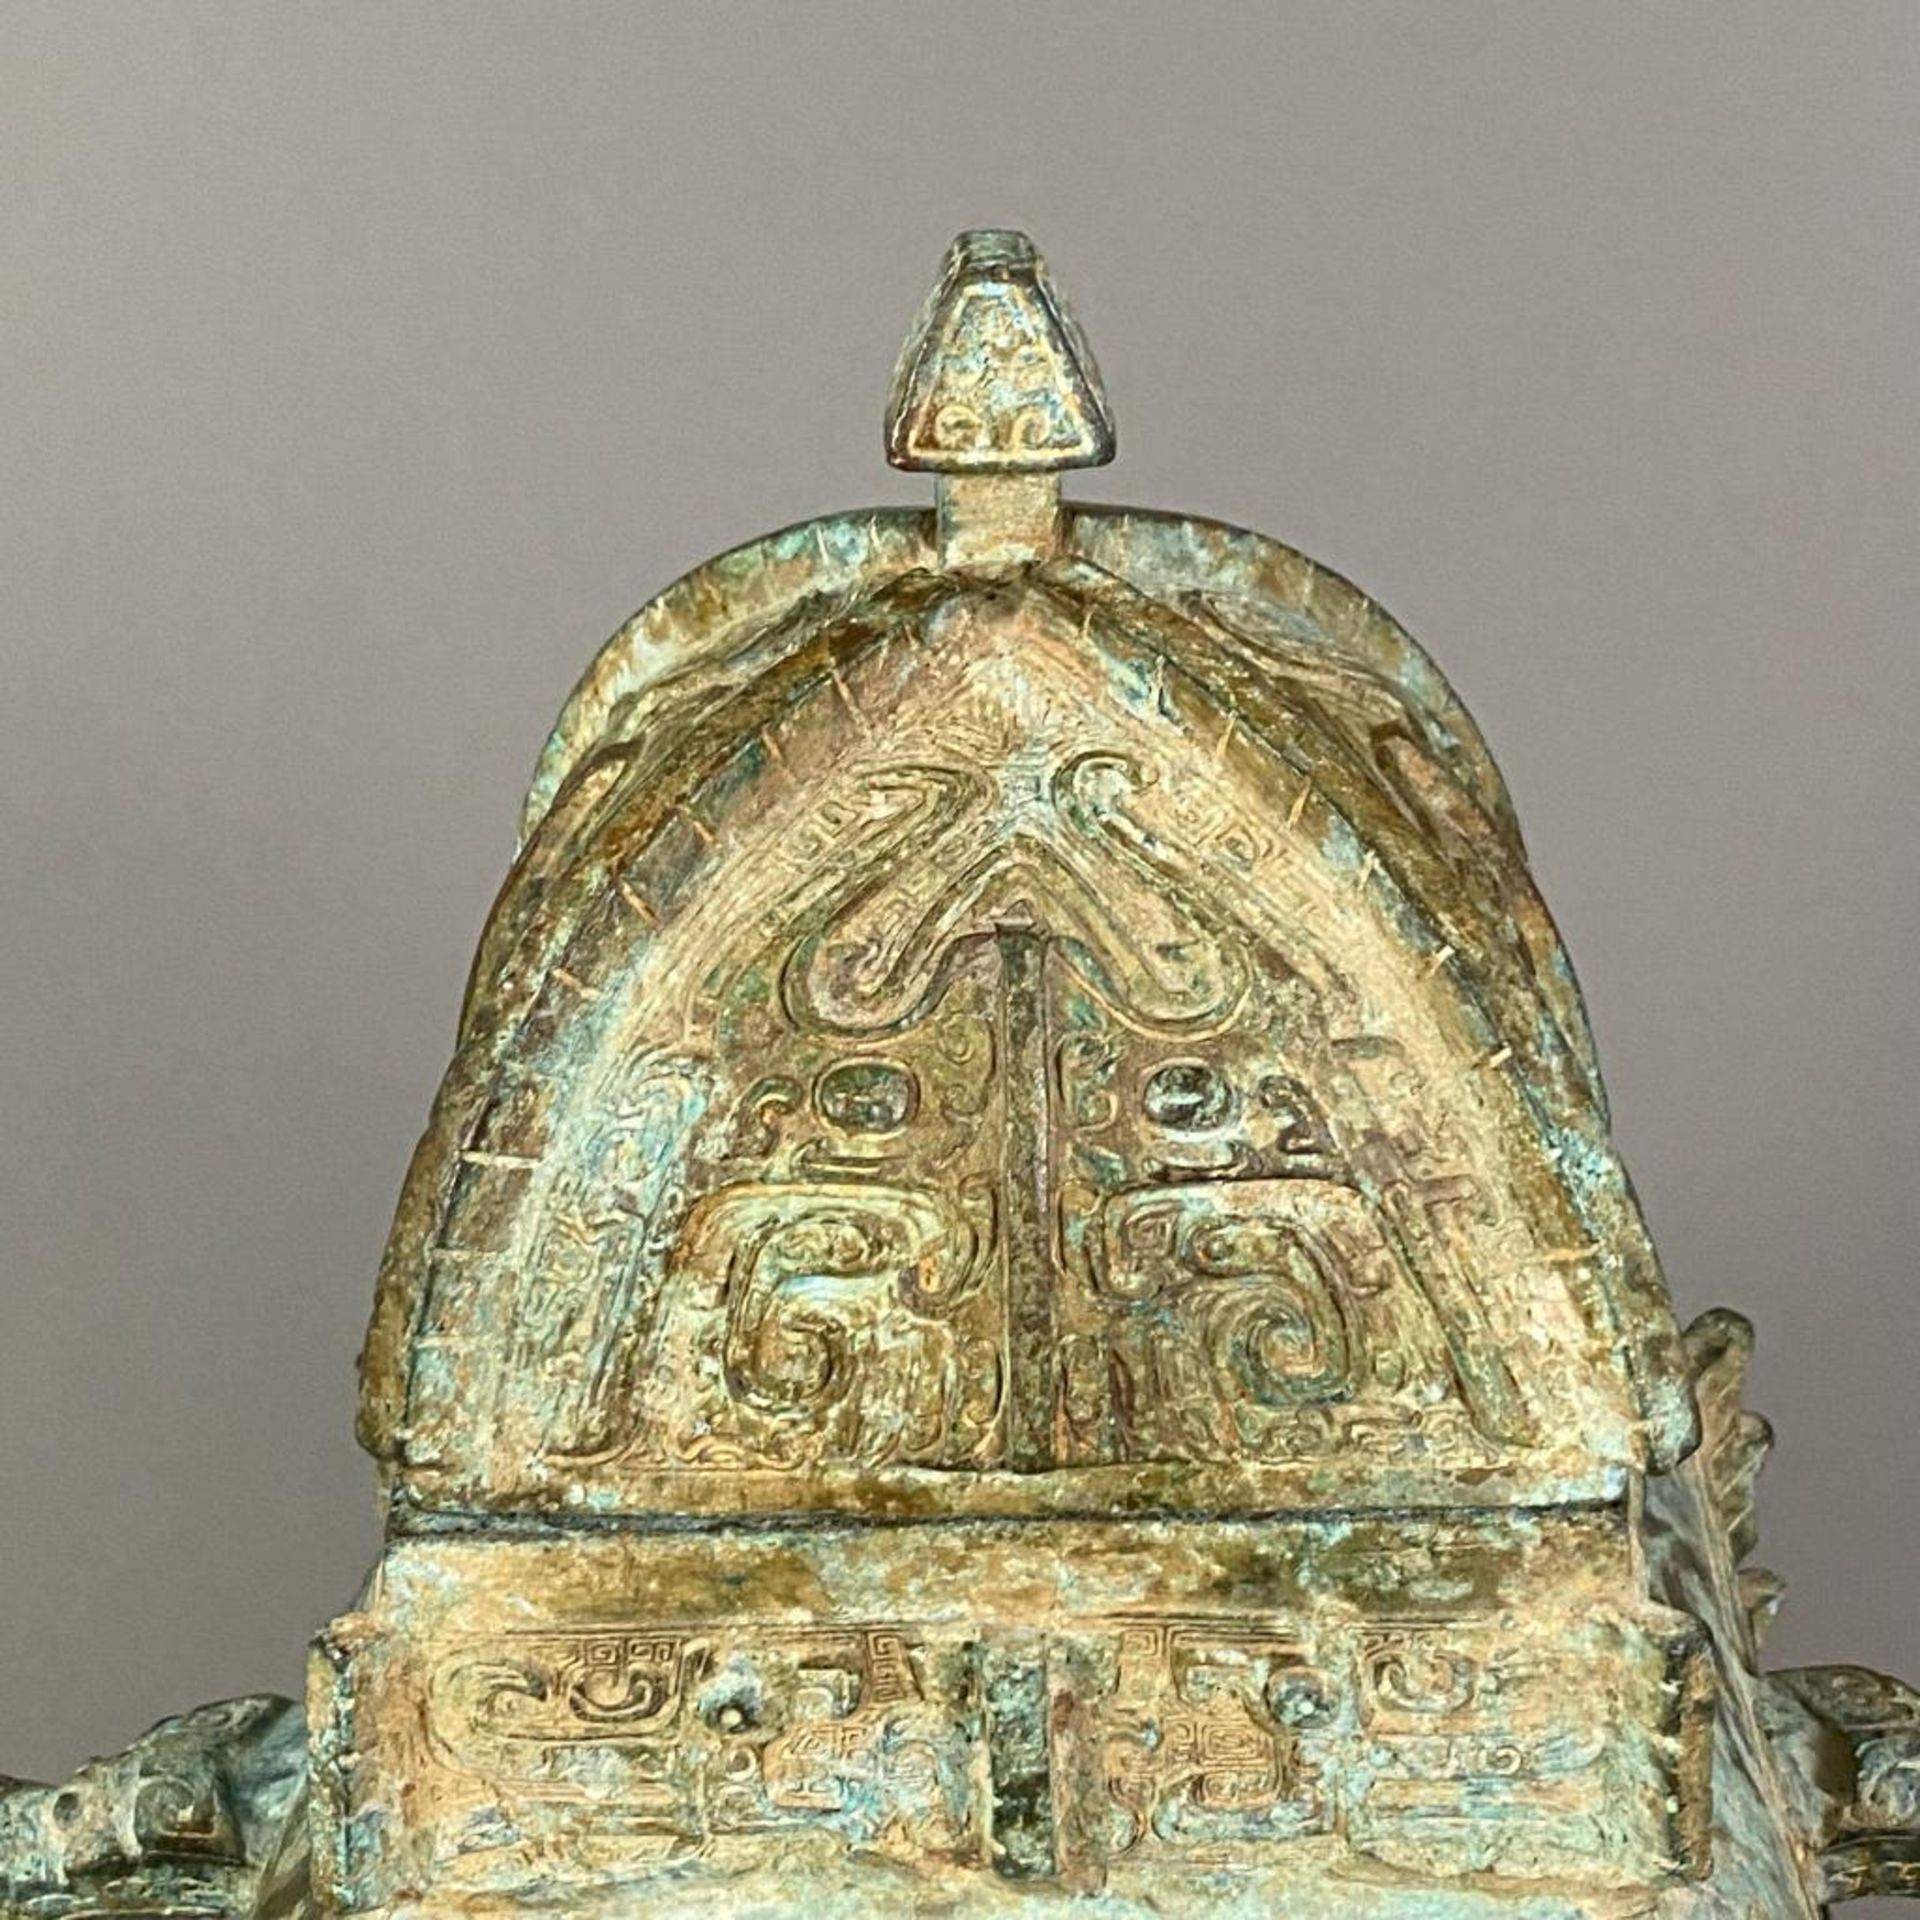 Fanghu-Vase im archaischen Stil - China, grün-braun patinierte Bronze, vierkantige gebauchte Form a - Image 2 of 10